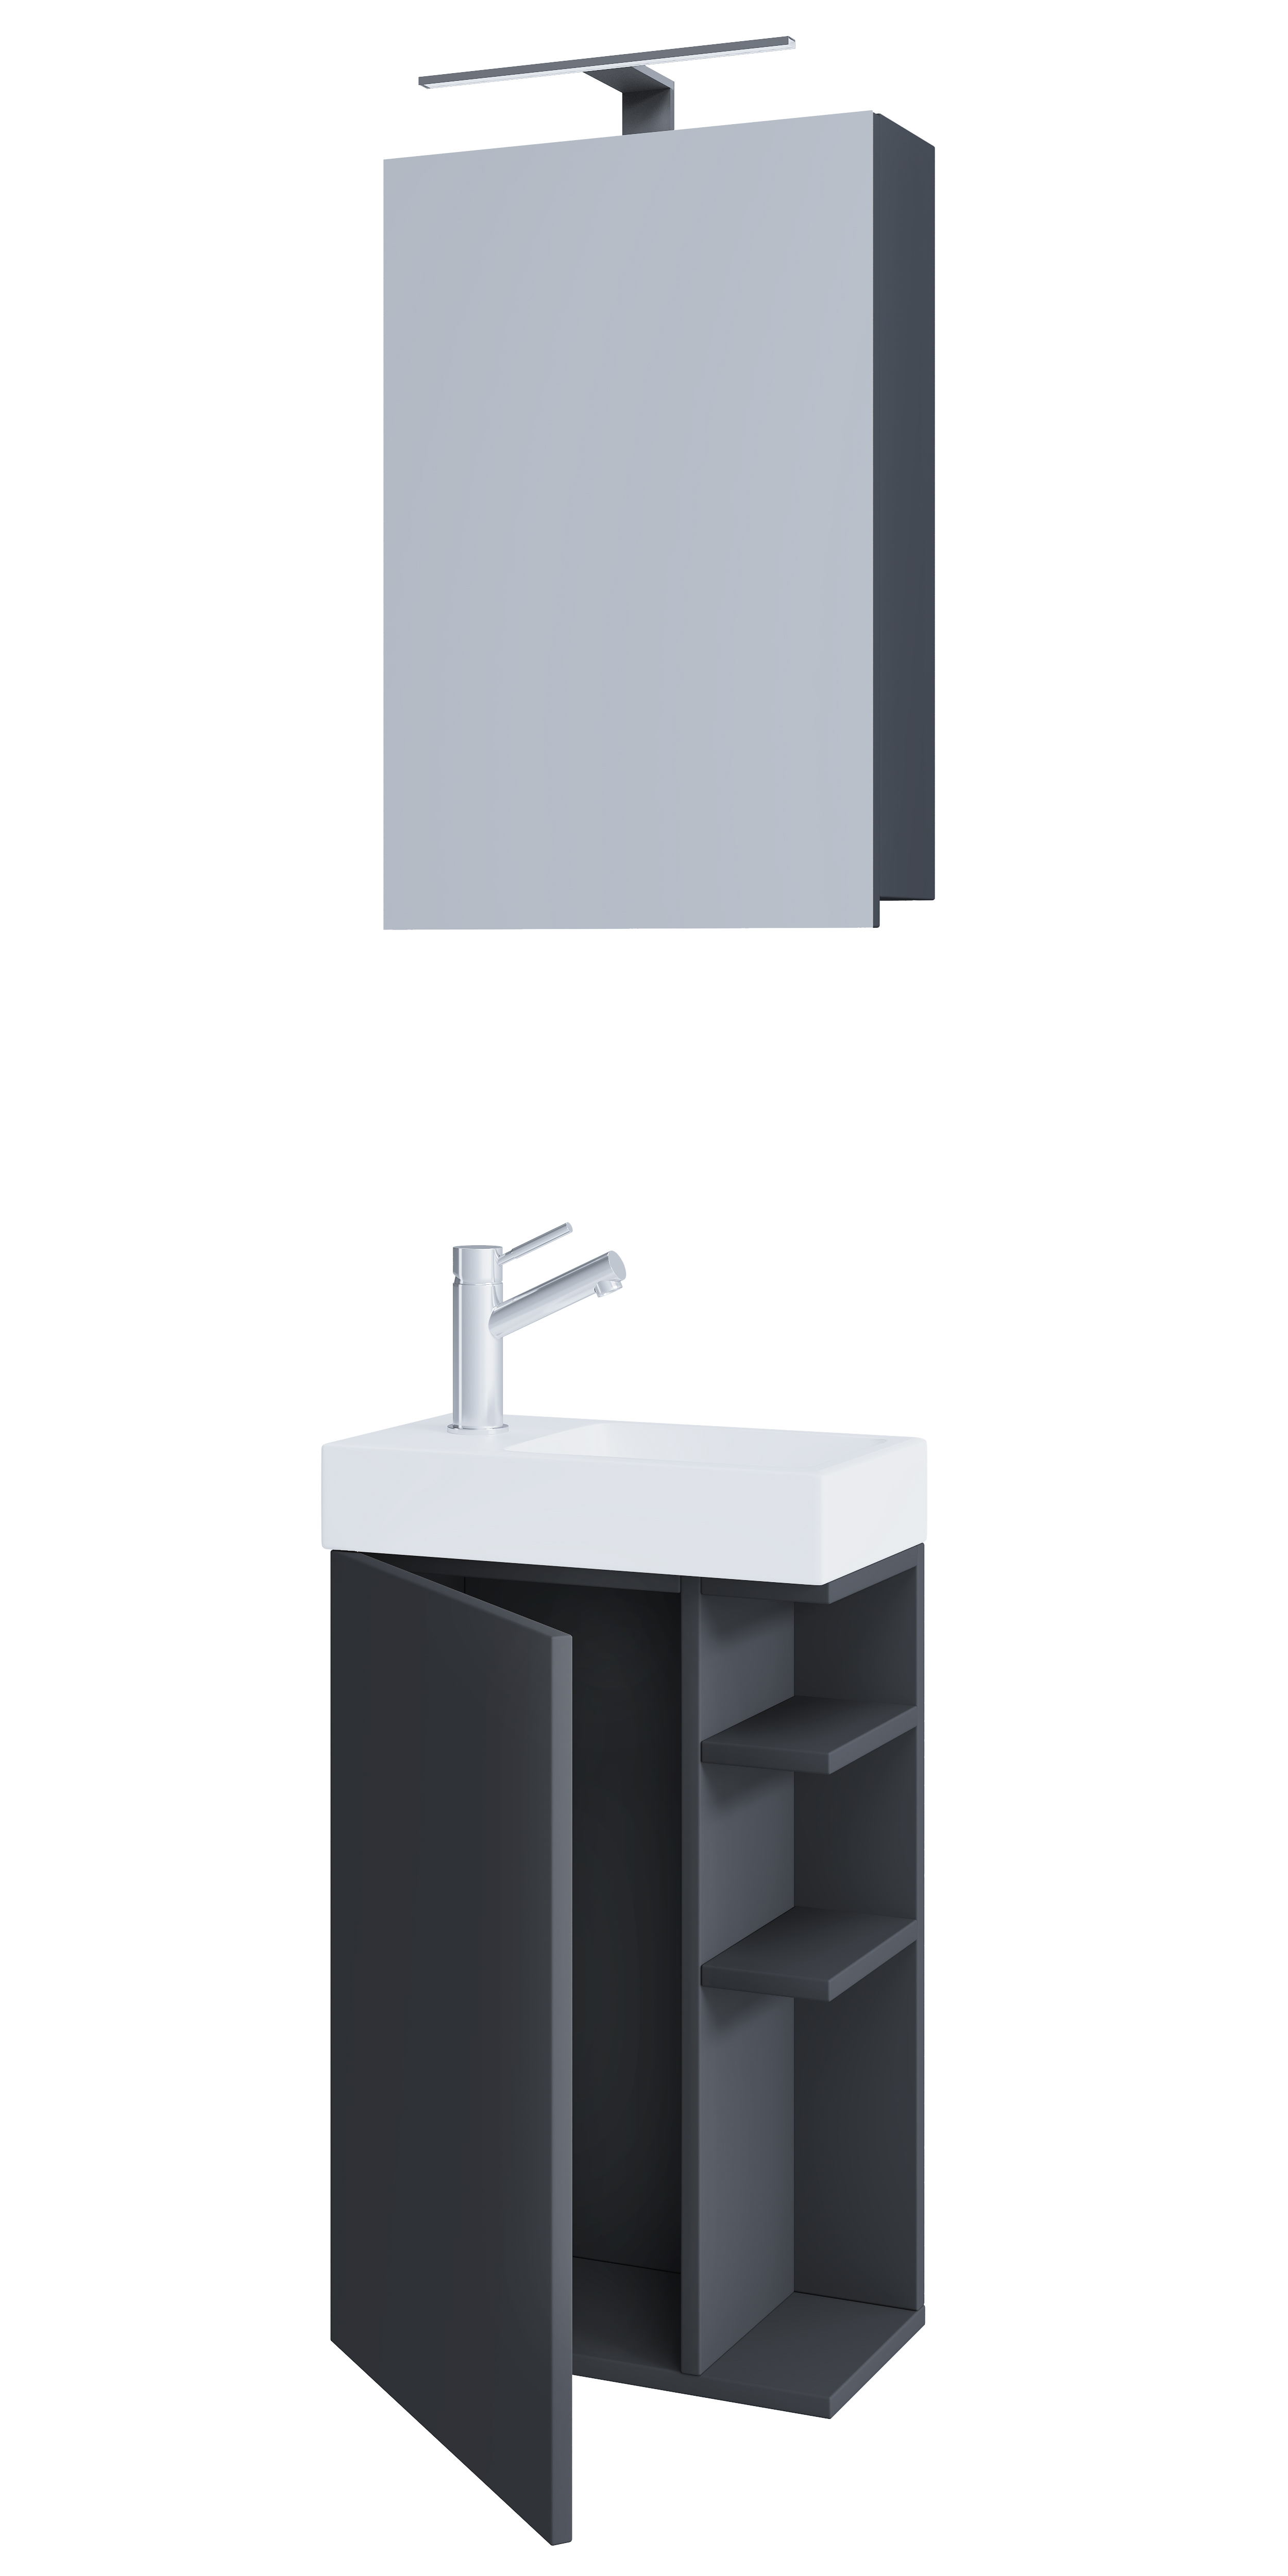 VCM NORDIC Lumia 3-delt gæstevaskeplads, m. spejlskab, håndvask, 1 låge, 2 hylder - antracitgrå træ